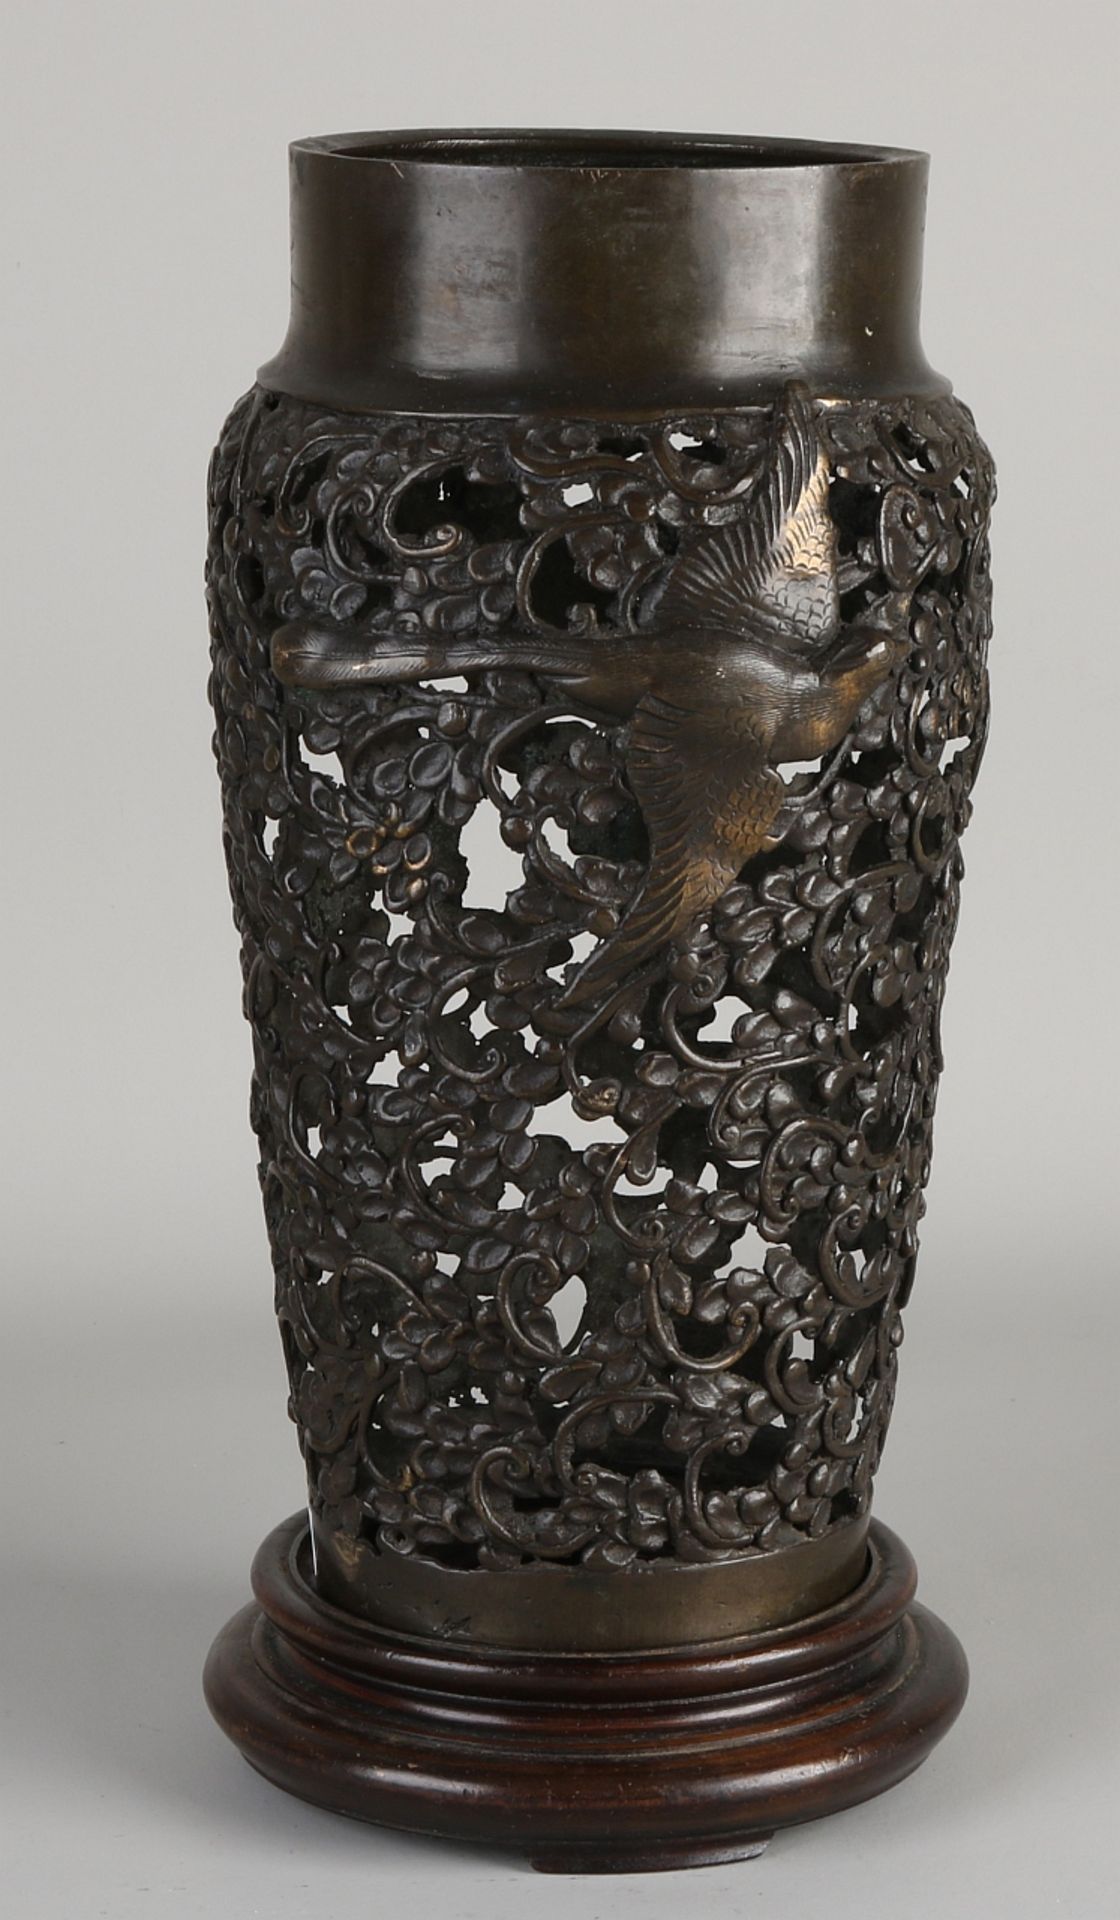 Japanese bronze vase on a pedestal